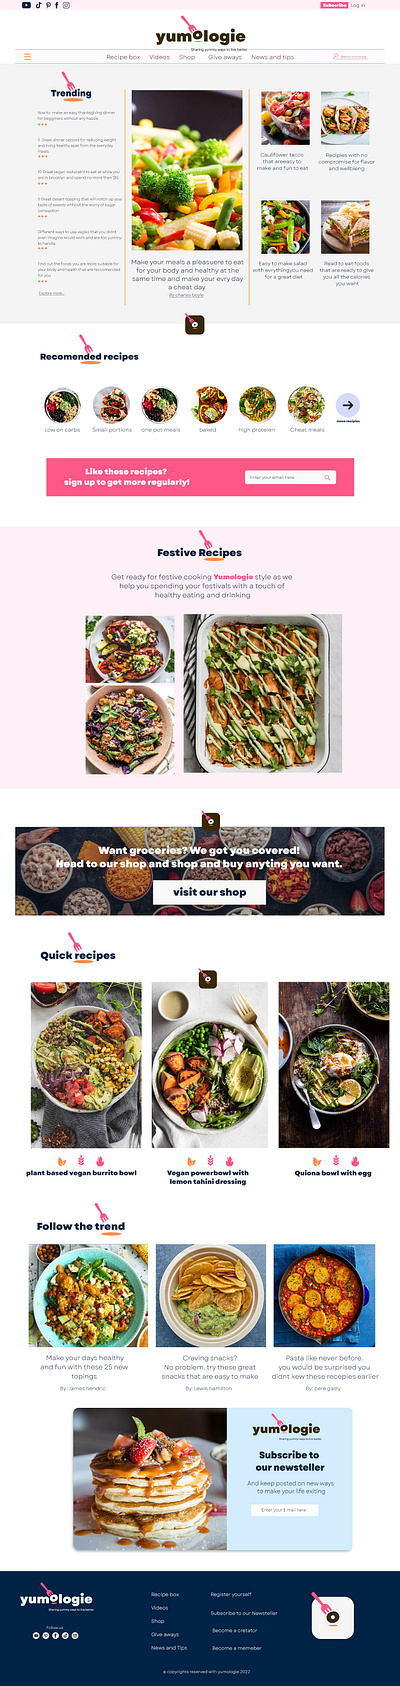 Homepage design for a food blogging website branding design graphic design ui